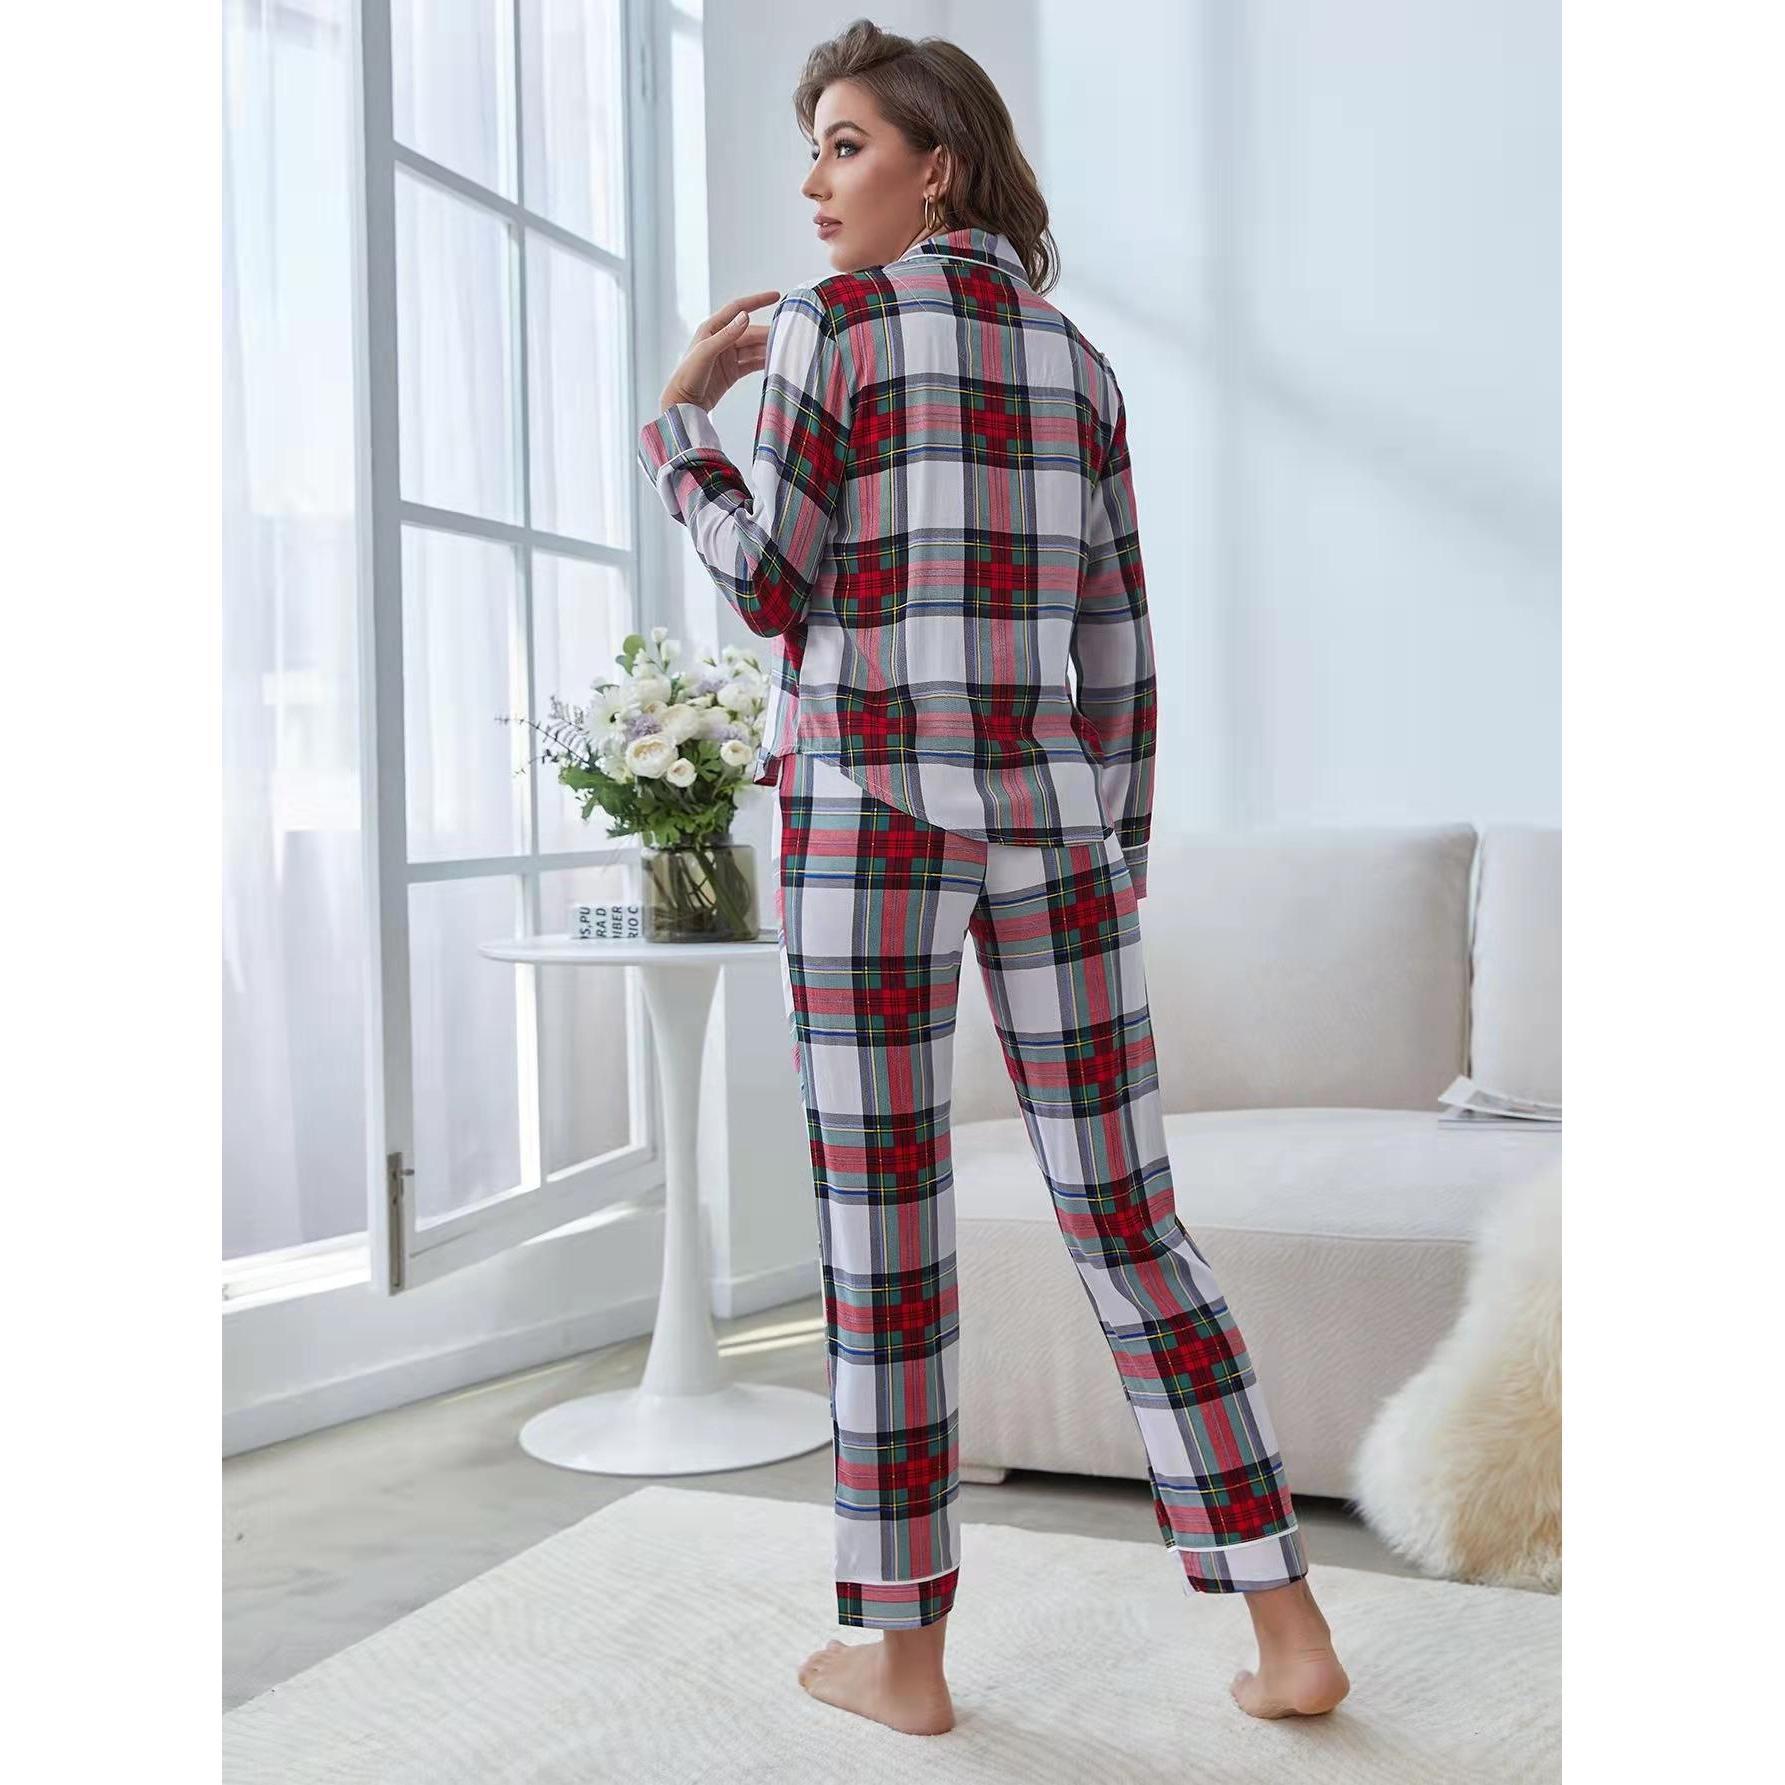 Pajamas Women Spring Autumn Cardigan Contrast Color Homewear Suit Mother Daughter Parent-Child Wear Pajamas